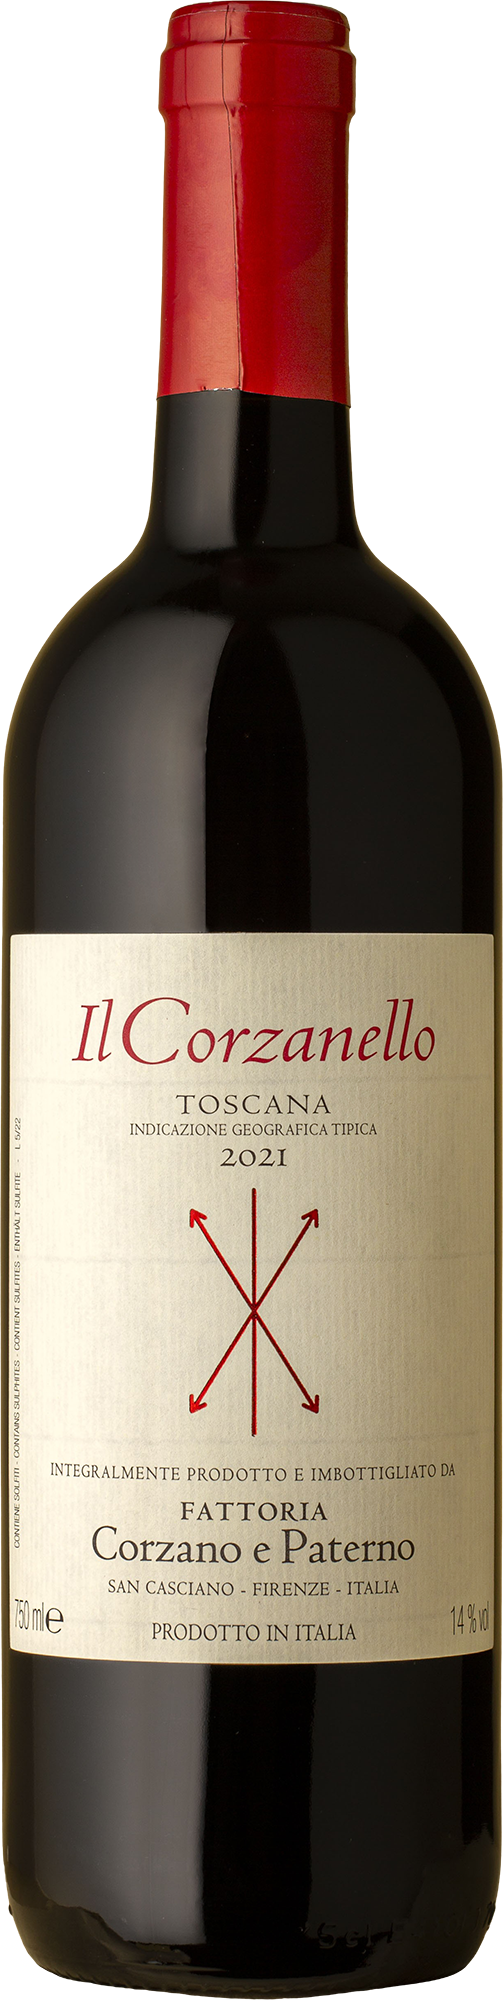 Corzano e Paterno - Il Corzanello Toscana Rosso 2021 Red Wine